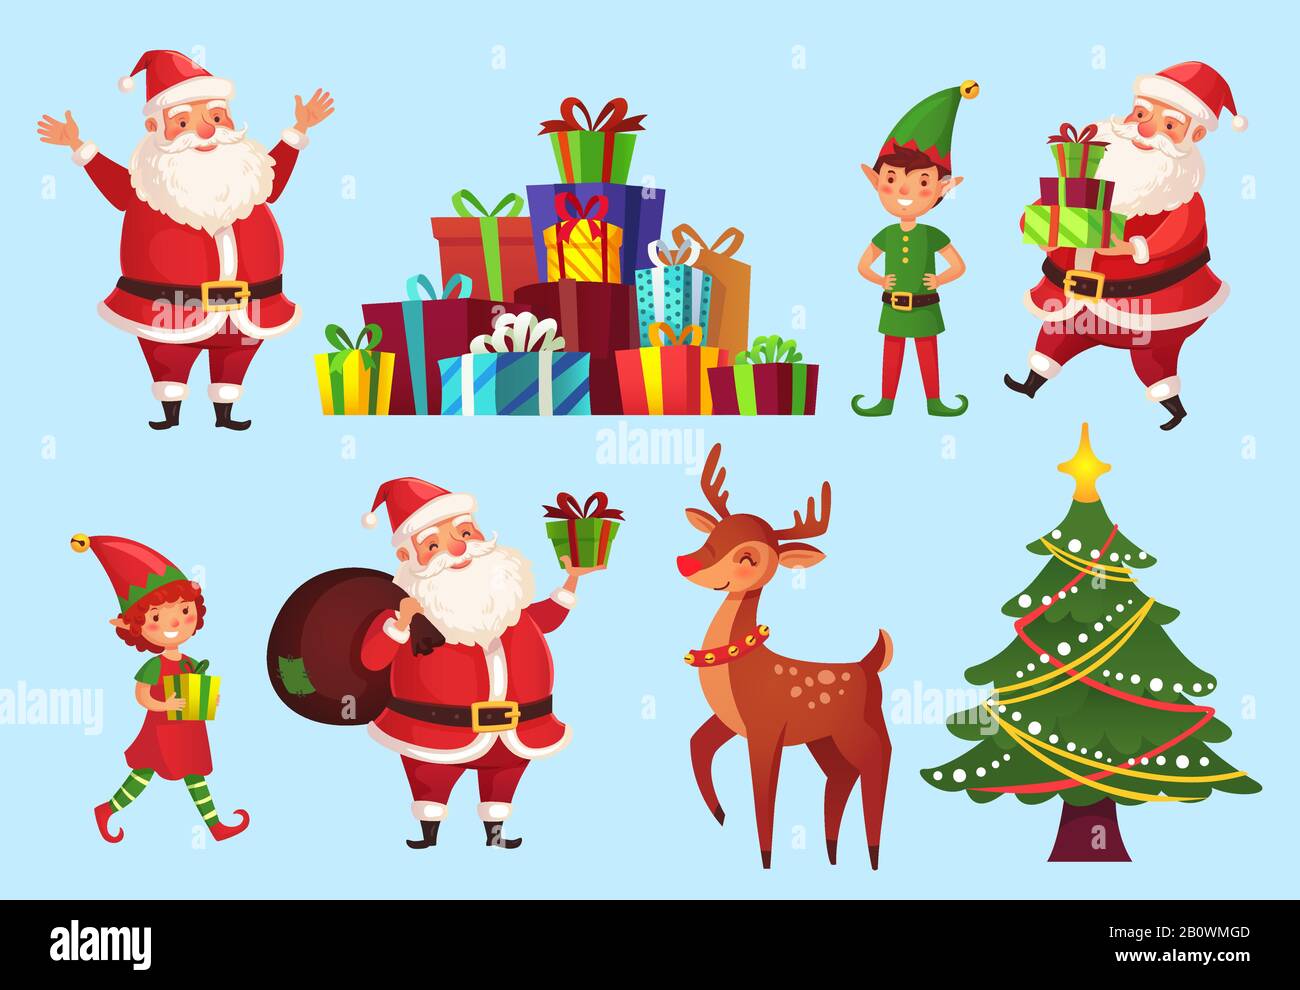 Cartoon weihnachtsfiguren. Weihnachtsbaum mit Weihnachtsmann Geschenke, Santas Helferelfen und Winterferien Hirsche Vektor-Zeichensatz Stock Vektor